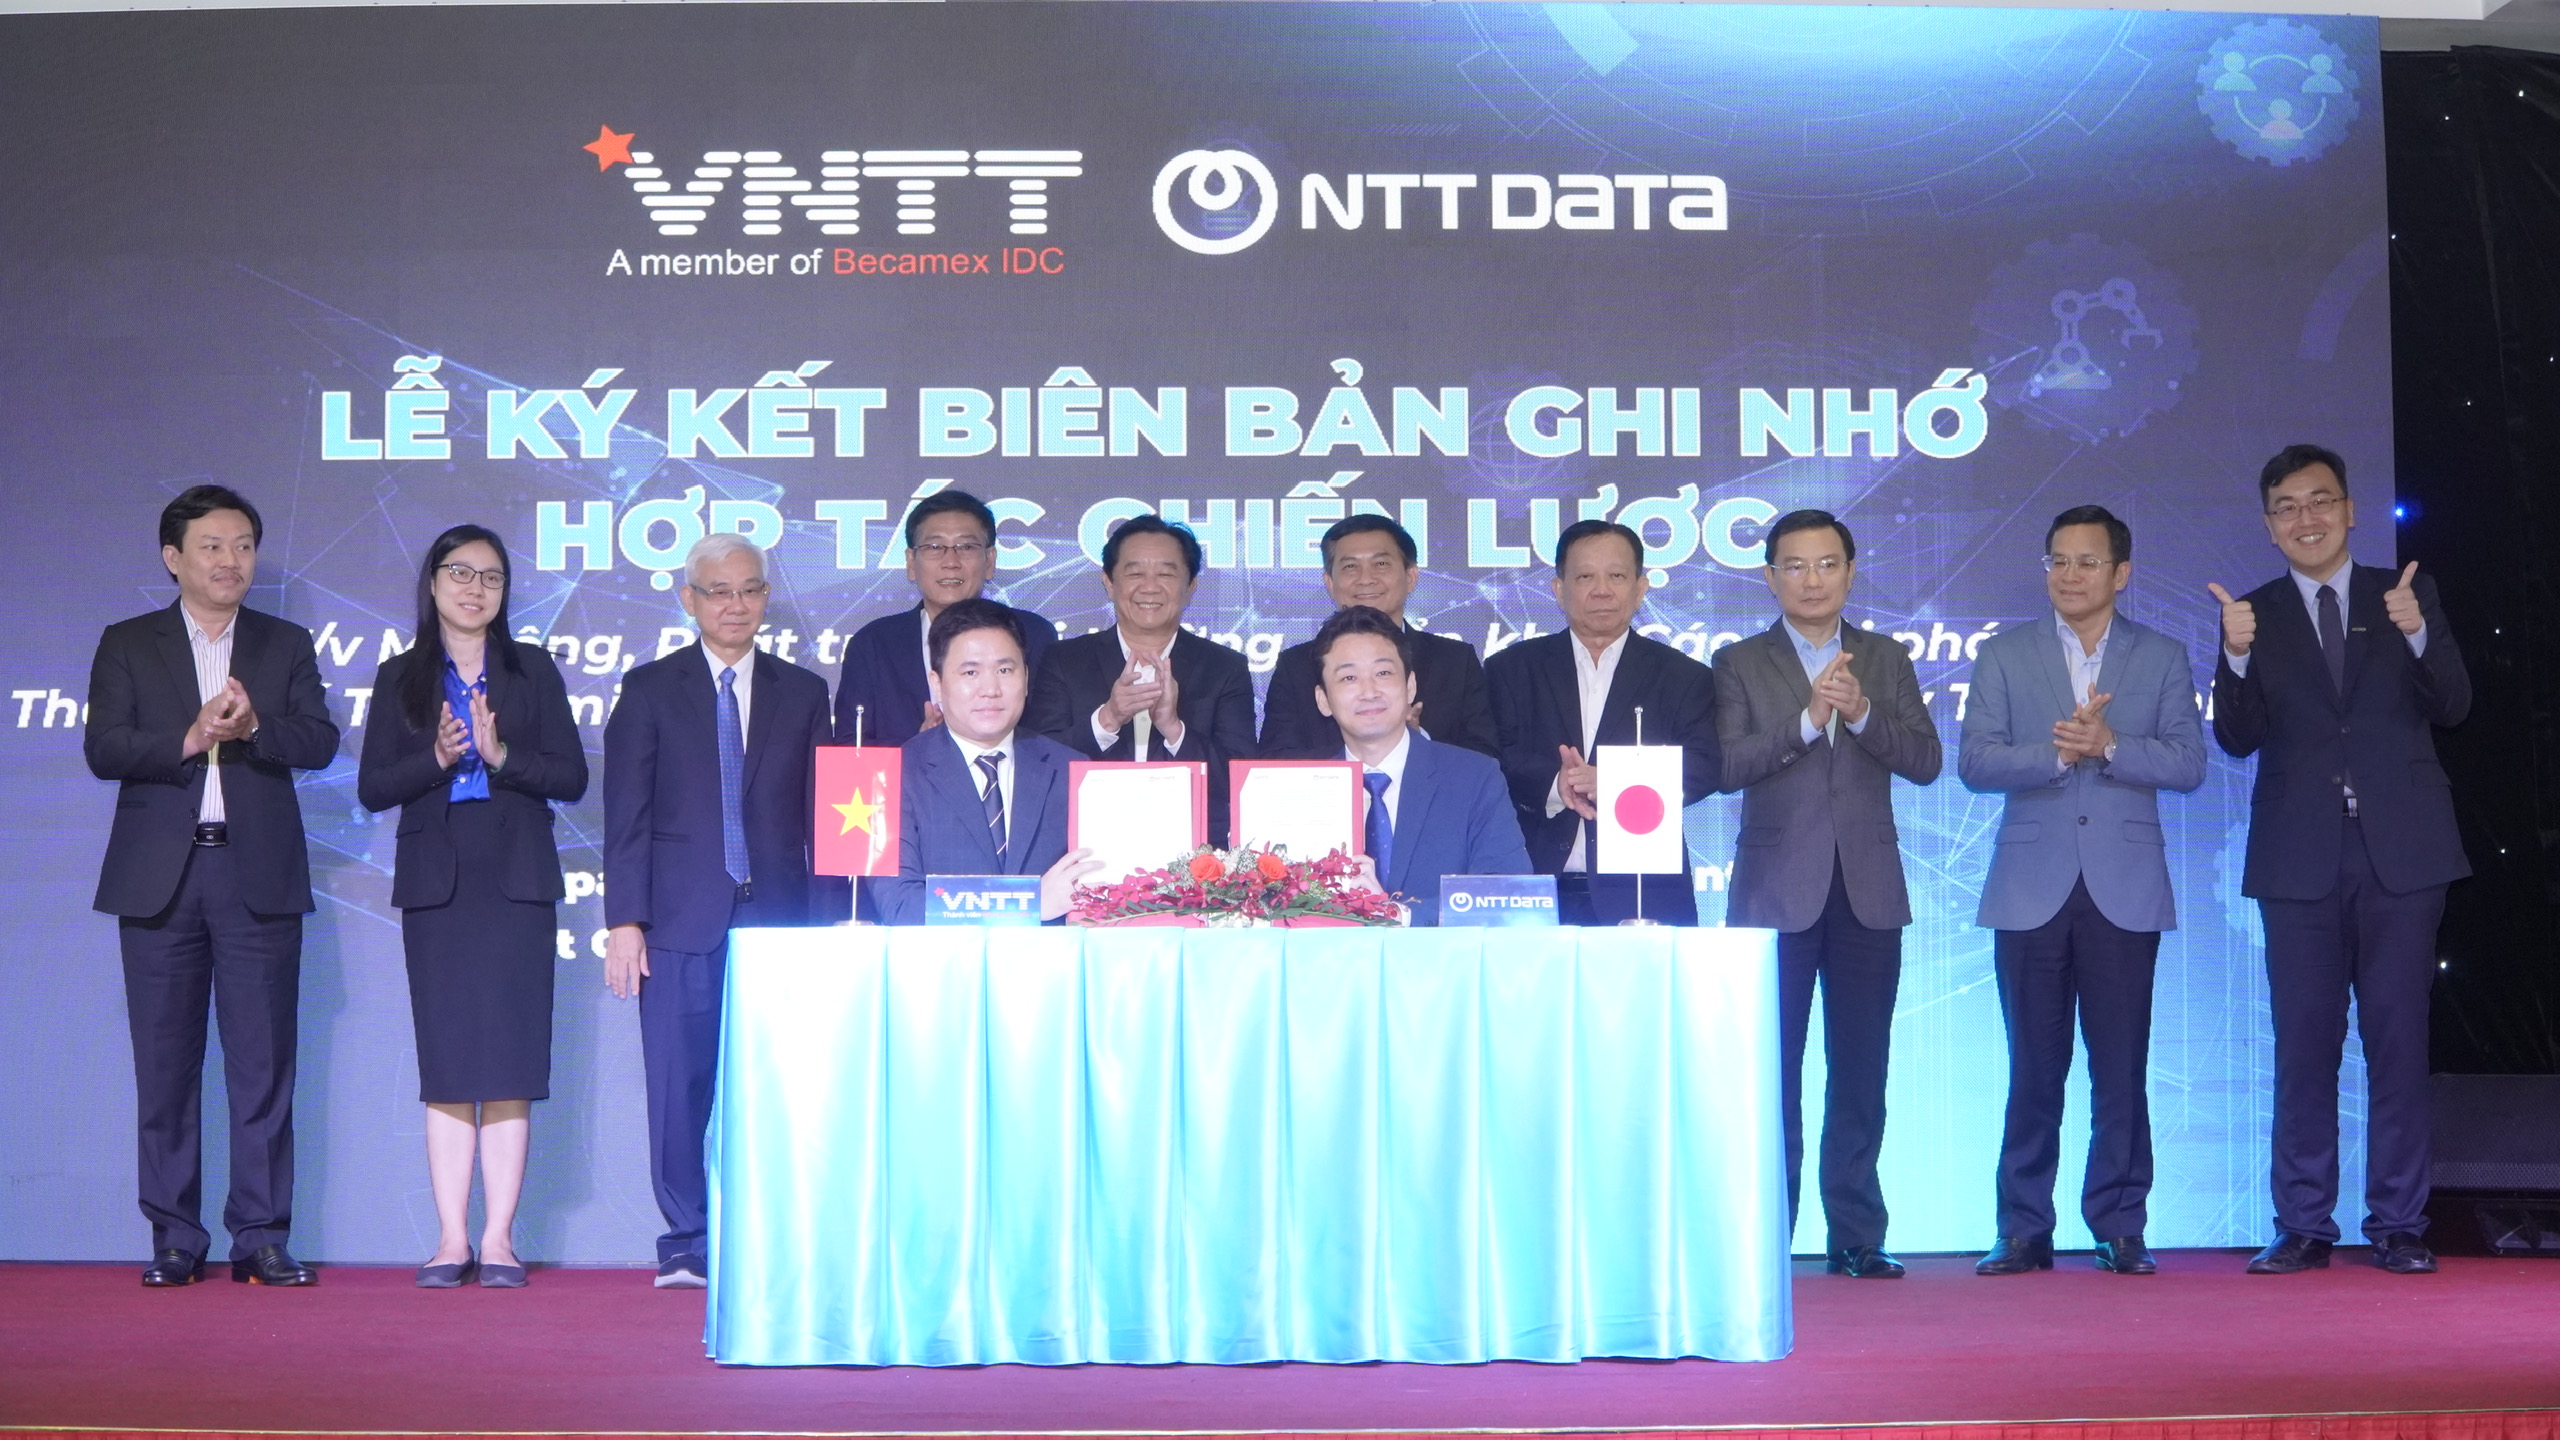 Đại diện Công ty VNTT và NTT DATA ký kết biên bản ghi nhớ hợp tác chiến lược phát triển trong thời gian tới.